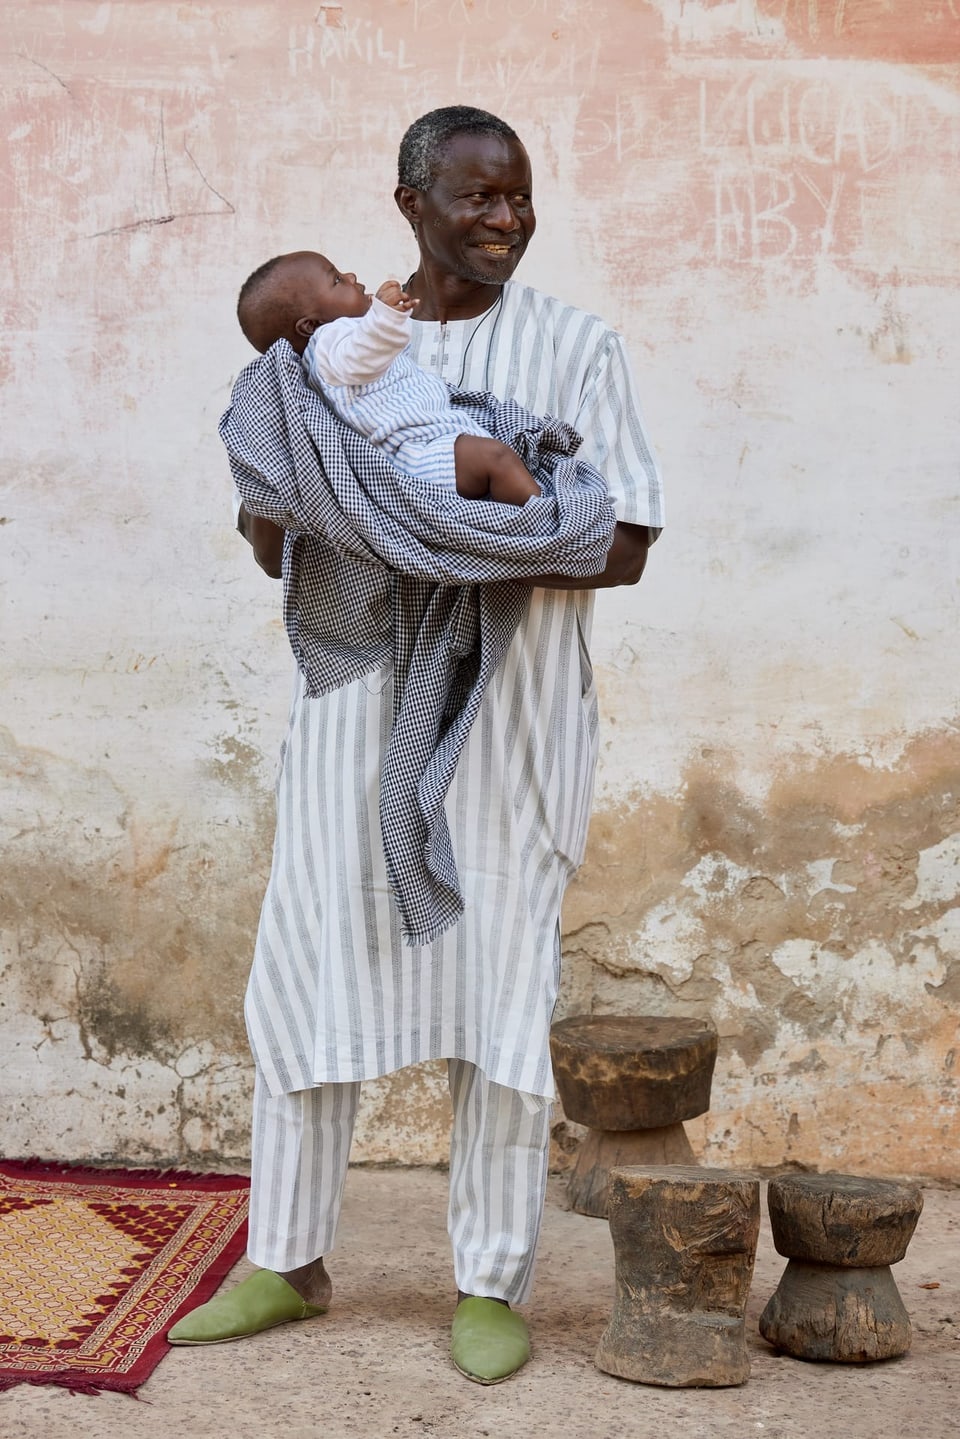 Mann aus Senegal hält ein Kind in den Armen.